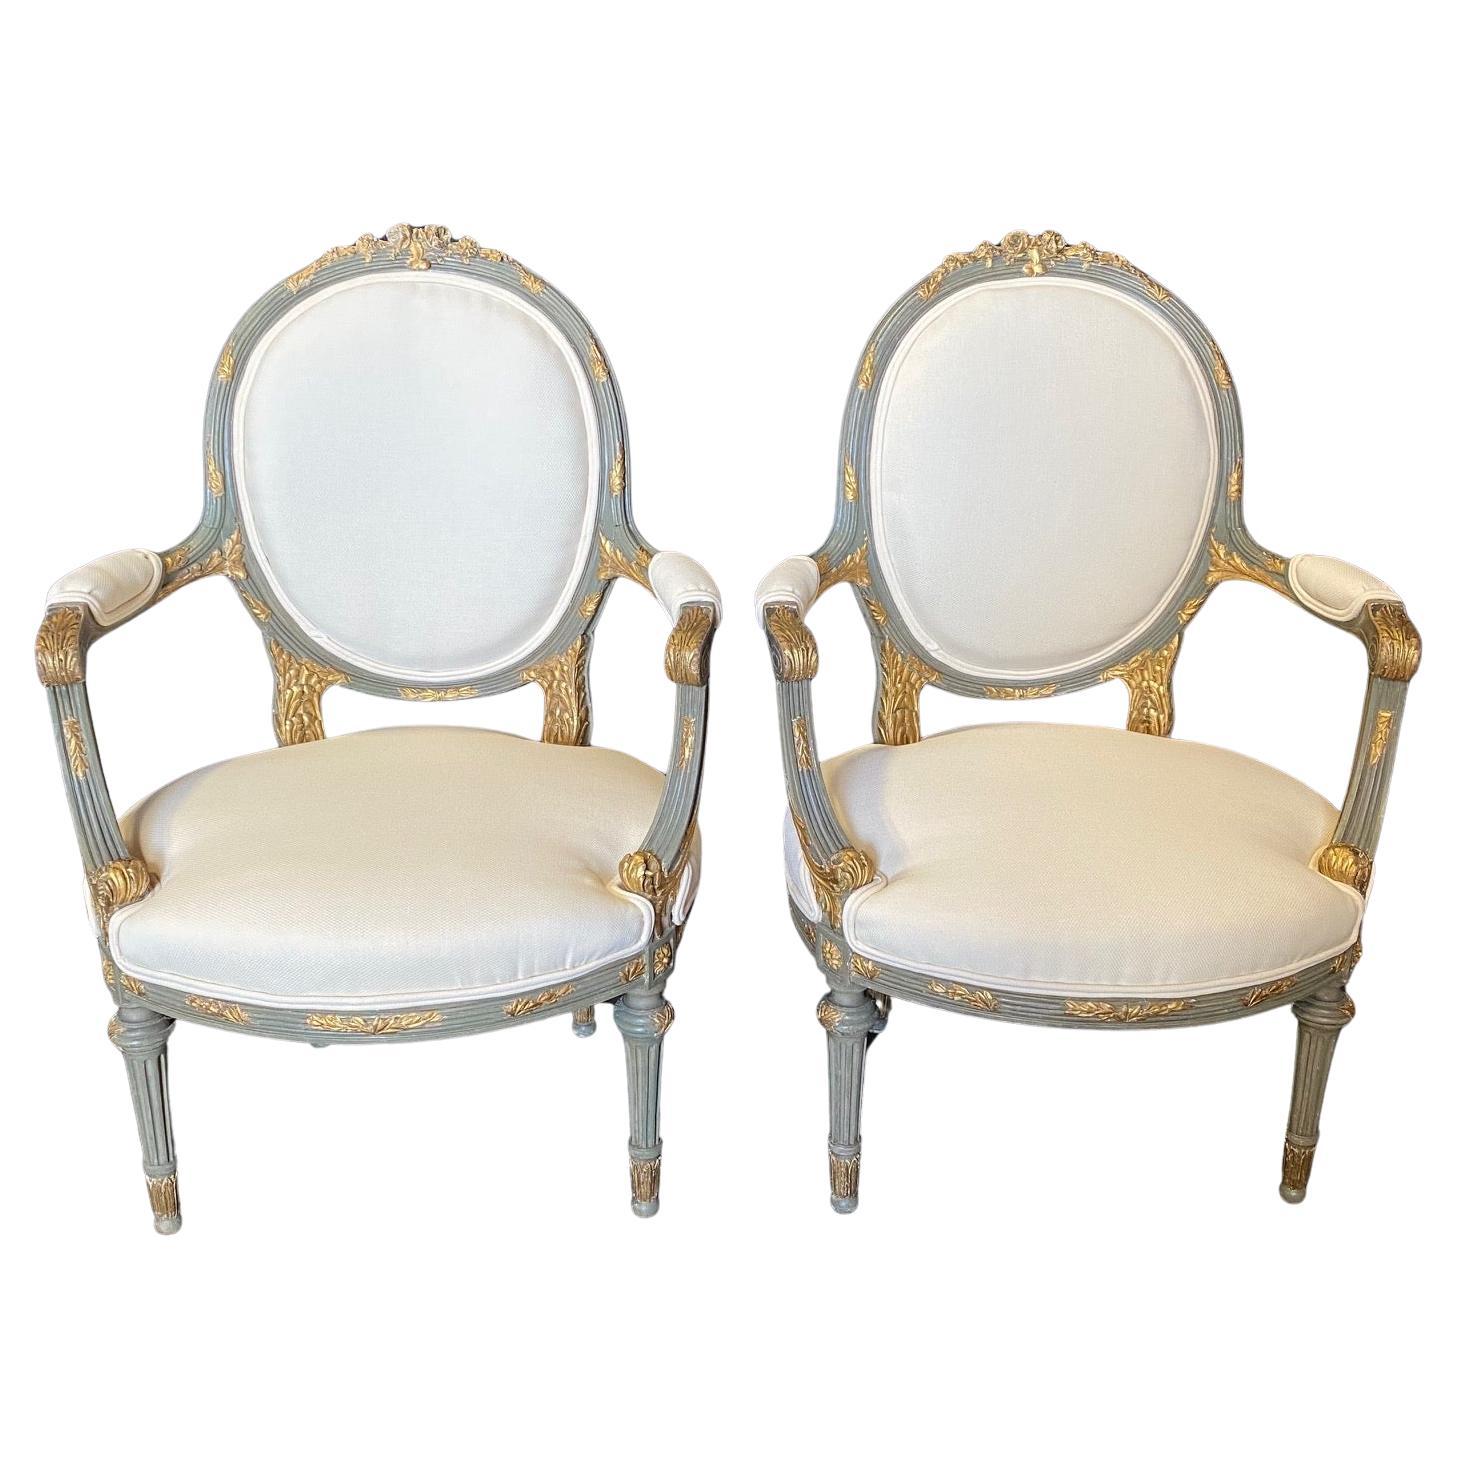  Paire de fauteuils néoclassiques français d'époque Louis XV du XIXe siècle